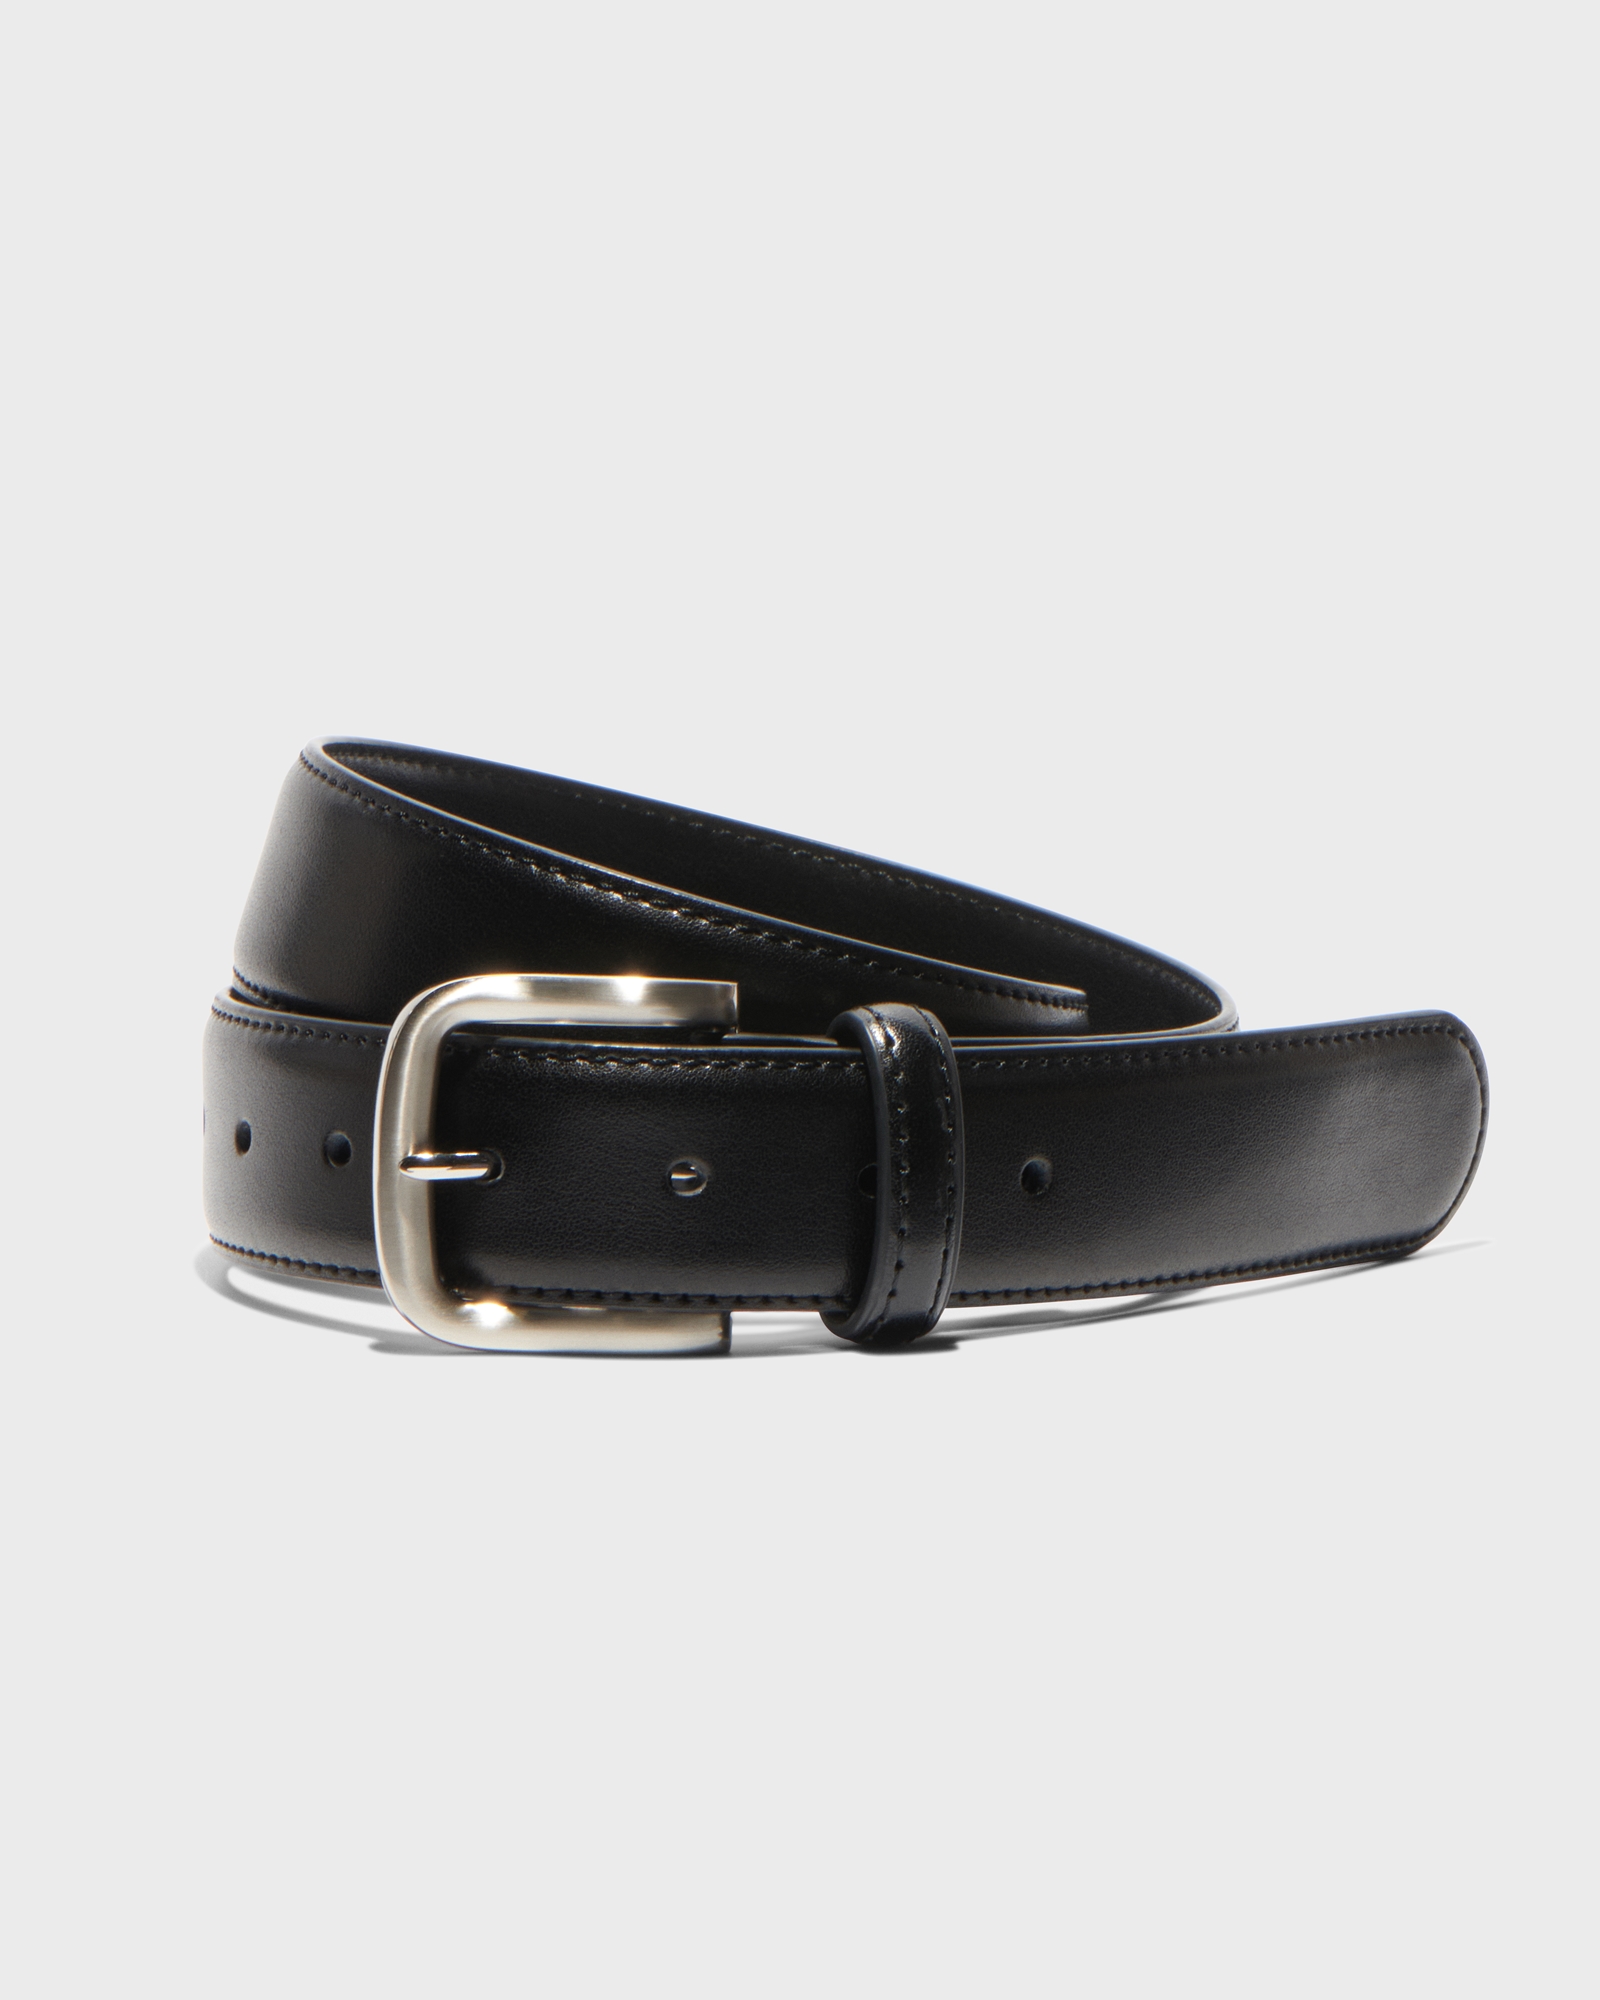 Leather | Silver Buckle Boyfriend Belt  | 980 Silver Black